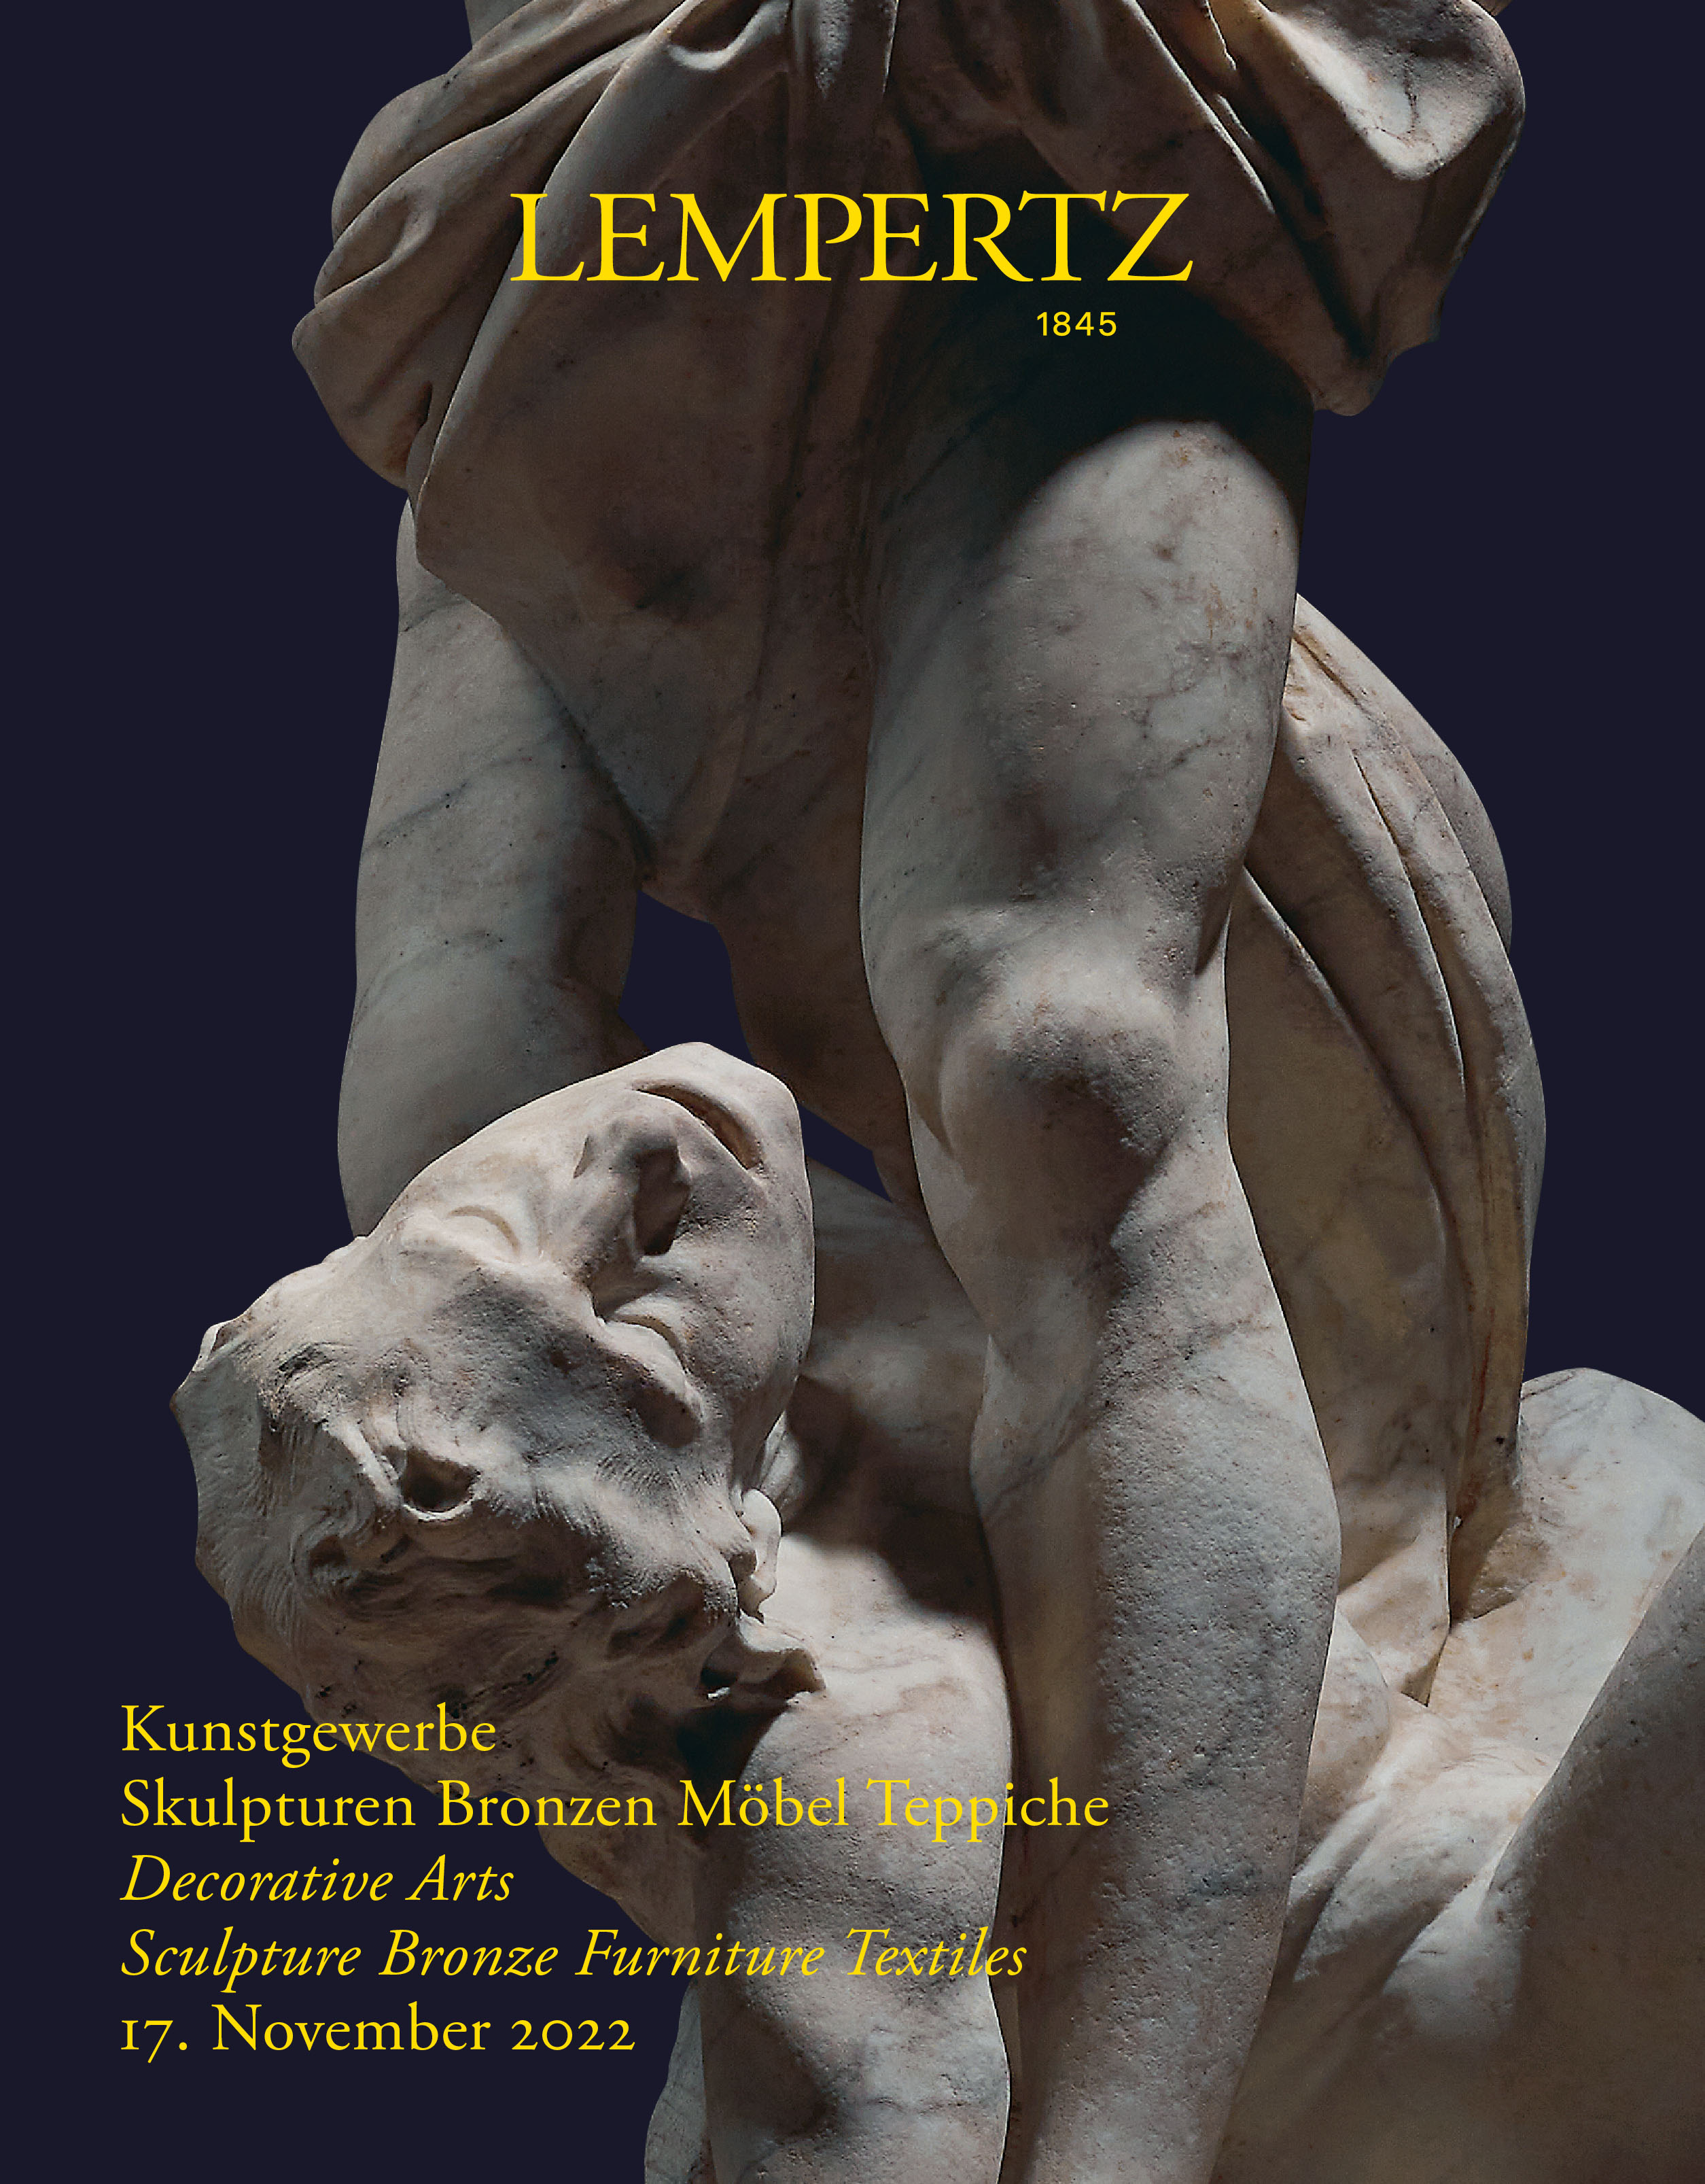 Auktionskatalog - Kunstgewerbe - Skulpturen Bronzen Möbel Teppiche - Online Katalog - Auktion 1208 – Ersteigern Sie hochwertige Kunst in der nächsten Lempertz-Auktion!